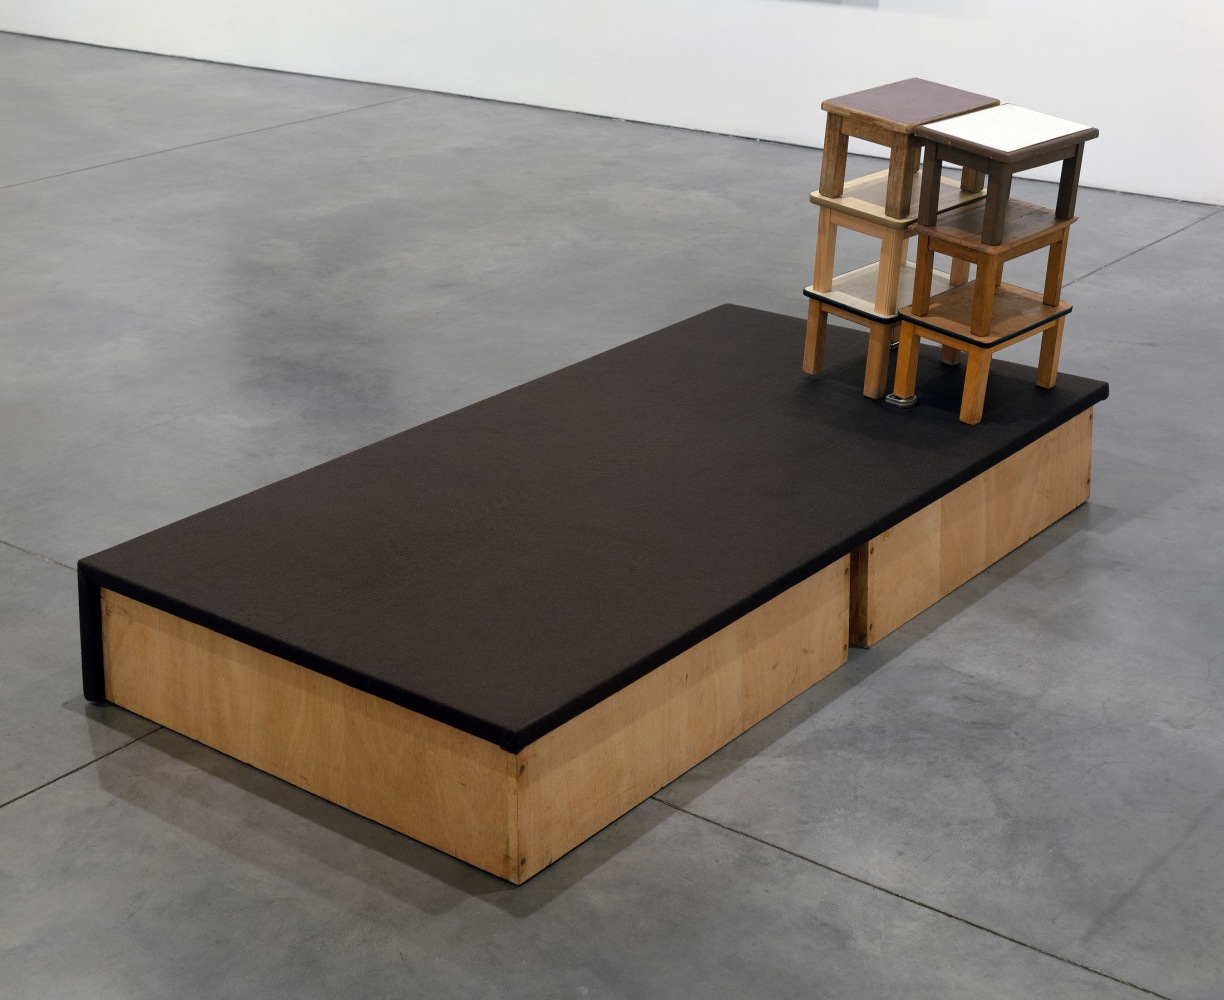 Reinhard Mucha
[Eichen] ex Freren, [2009], 1984
Wood, felt, metal, PVC, Linoleum, Formica
34 3/4 x 75 1/4 x 38 3/4 inches
(88 x 191 x 98.5 cm)